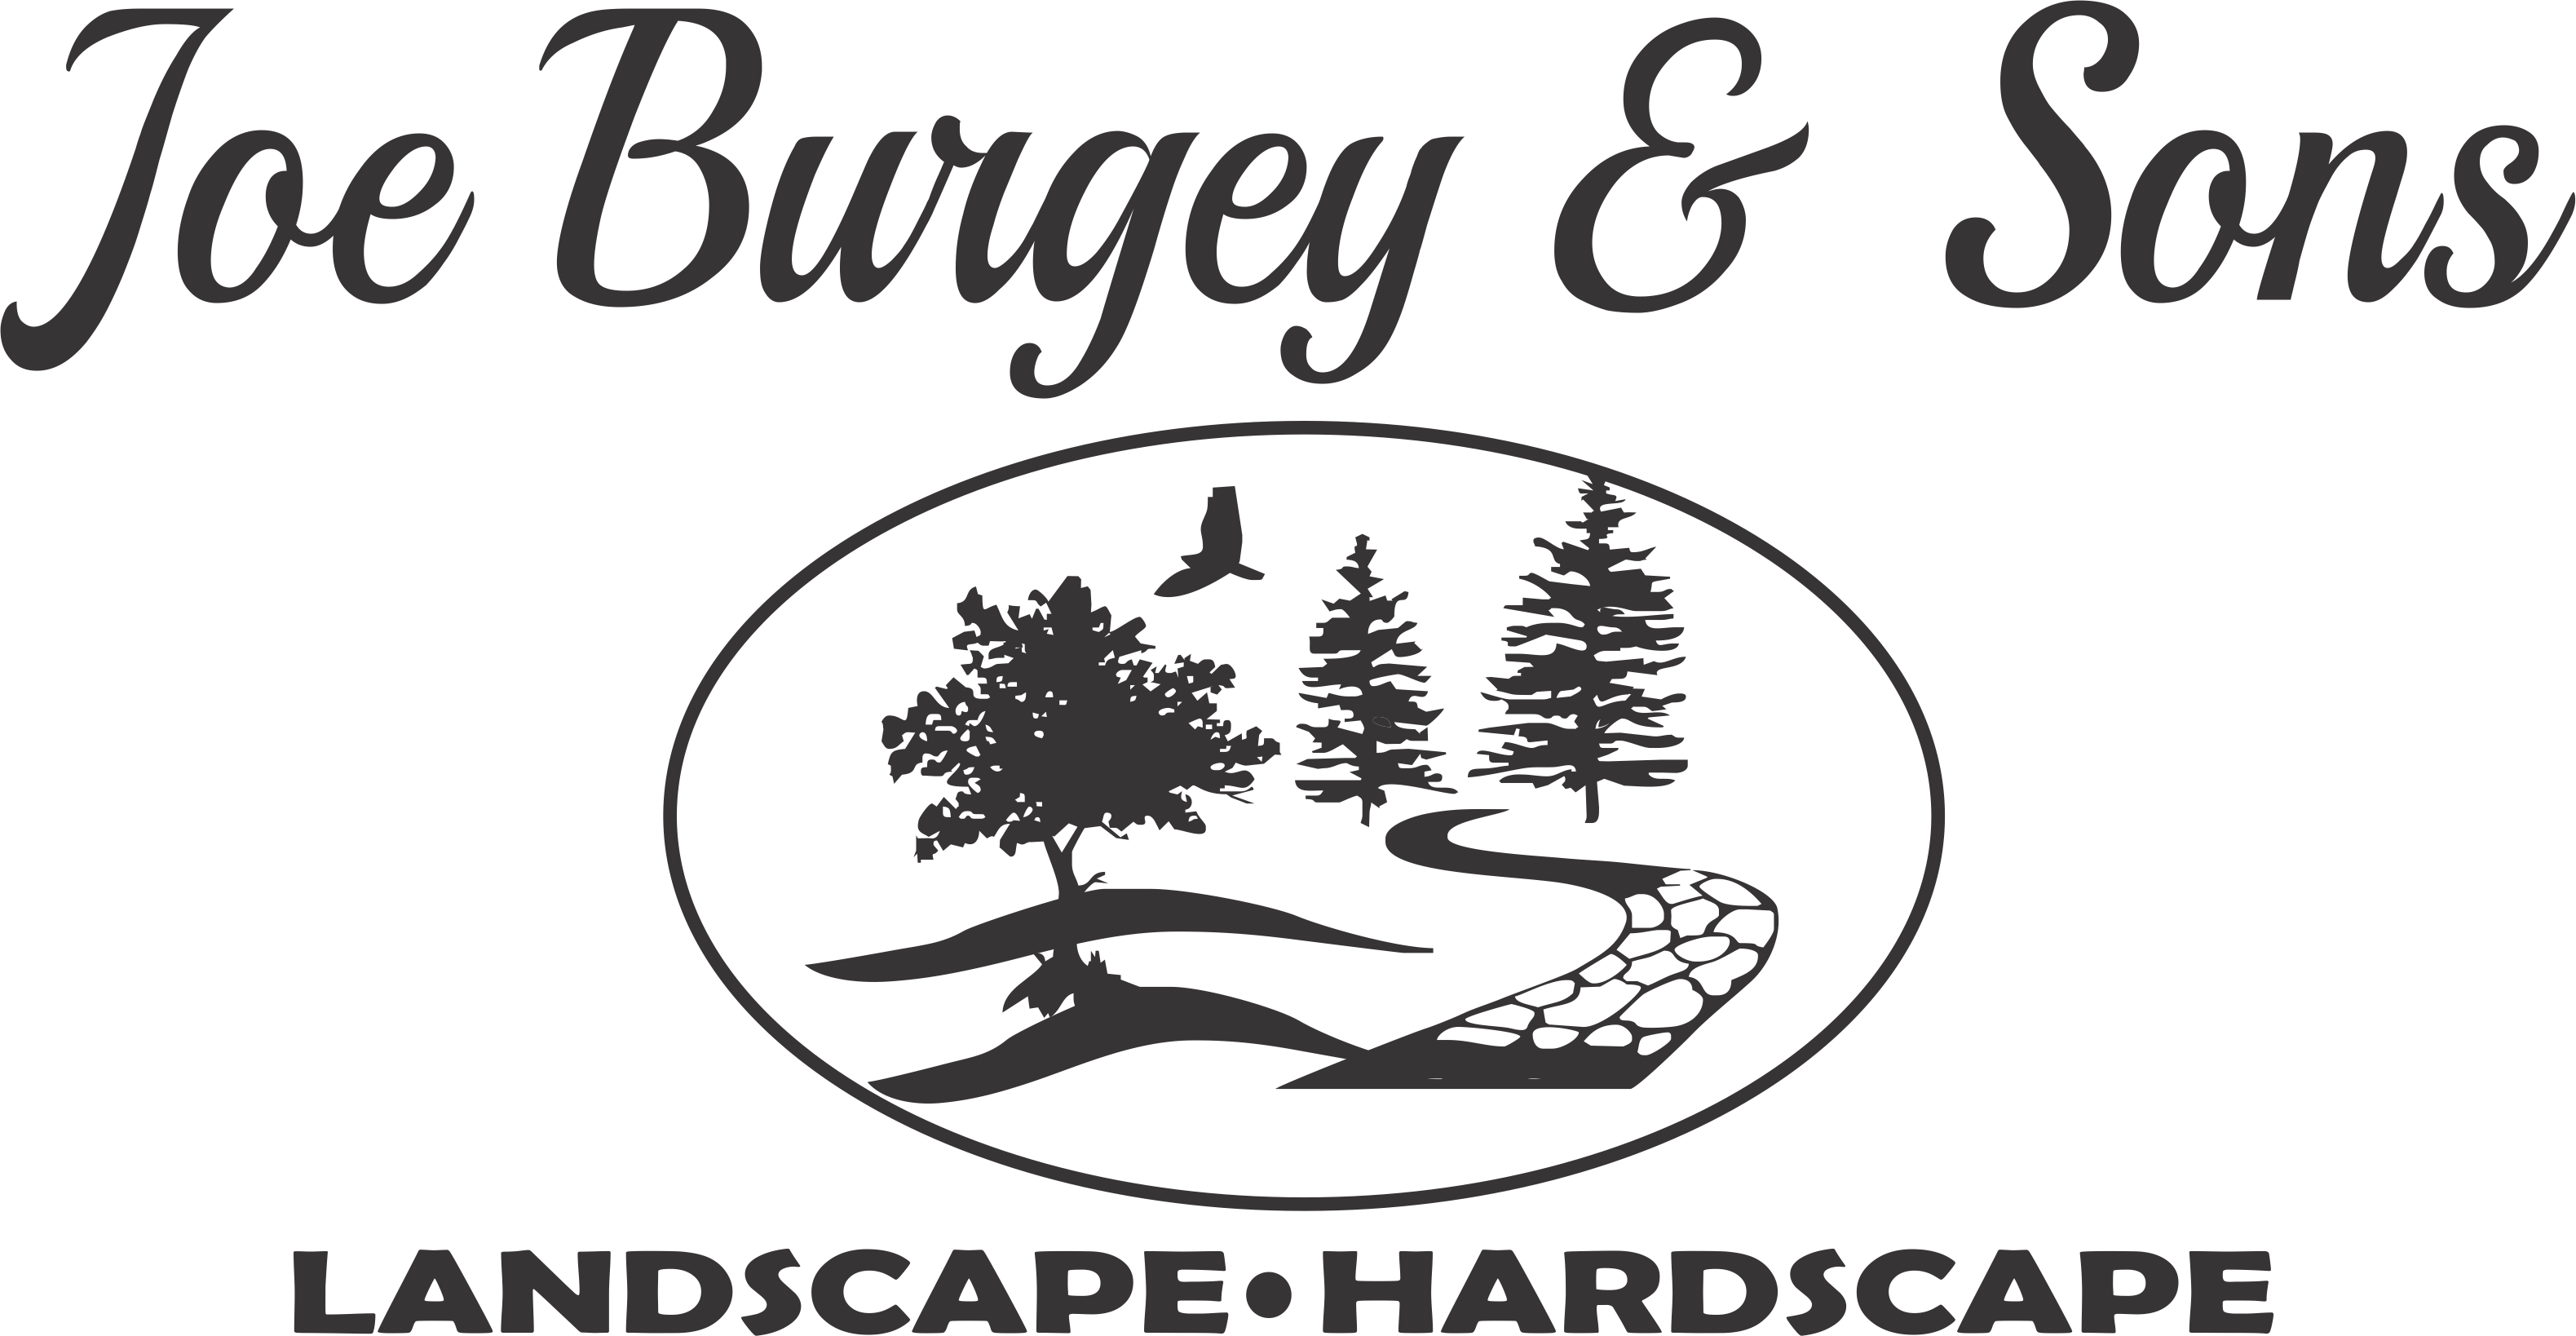 Joe Burgey & Sons ♦ Landscape,  Hardscape & Excavation